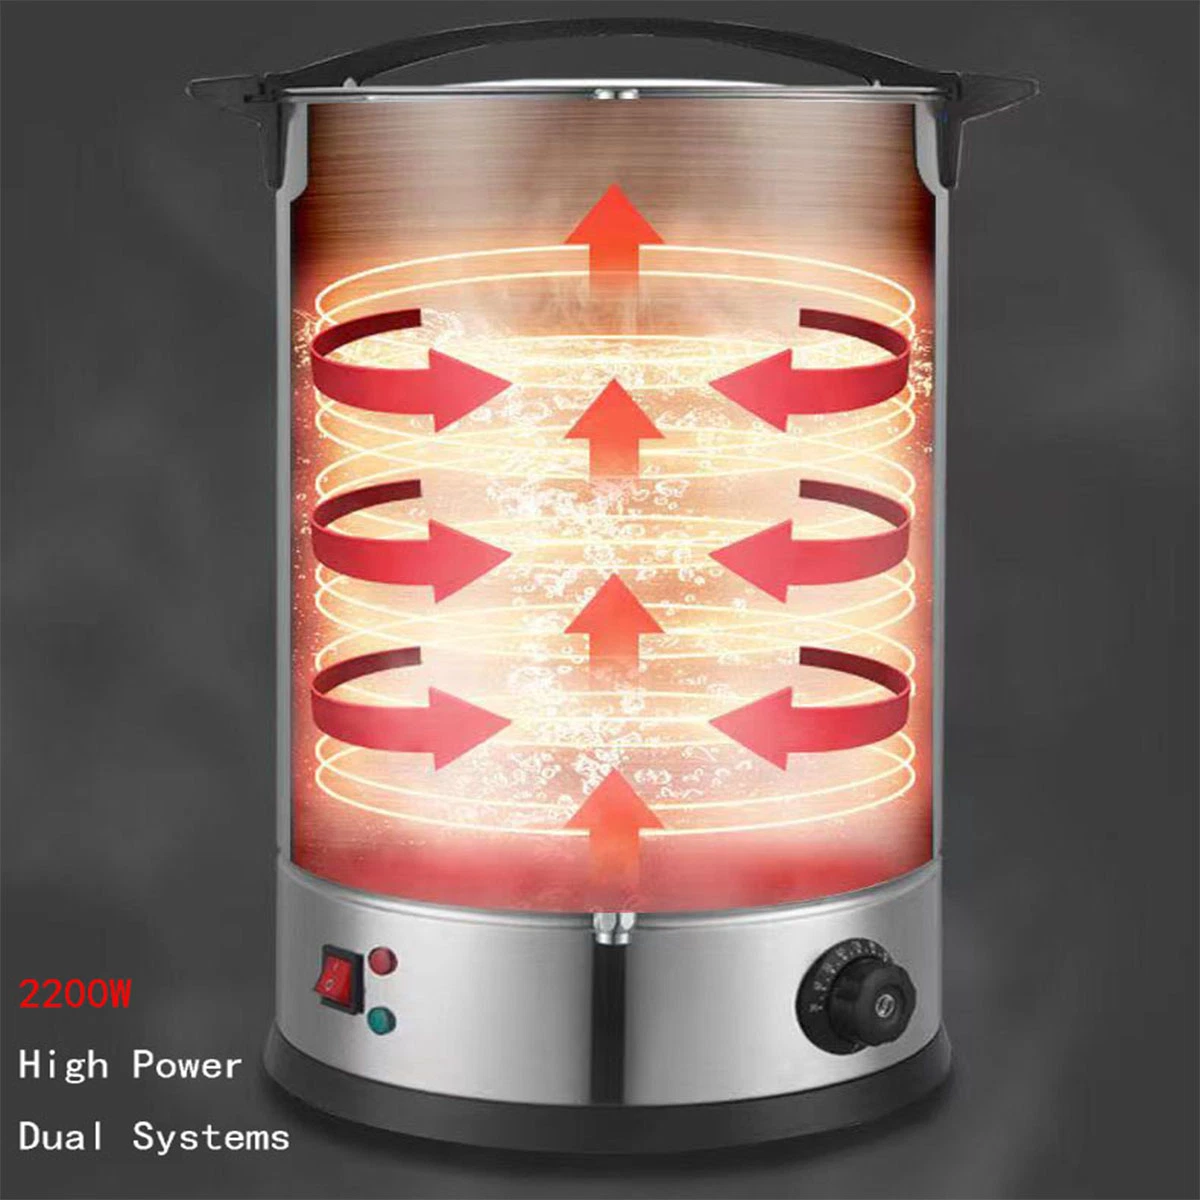 Hochwertige Haus Haushalt Besten Edelstahl Elektrische Kaffee Perkolator Maschine Maschine Küchengerät